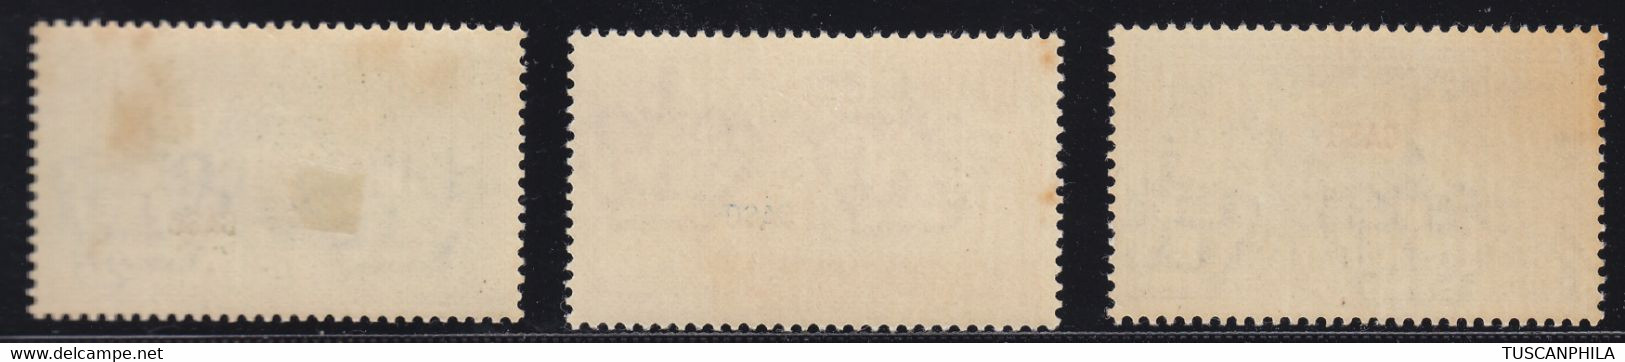 1932 3 Valori Sass. 19-22-23 MNH** MH* Cv 126 - Aegean (Caso)